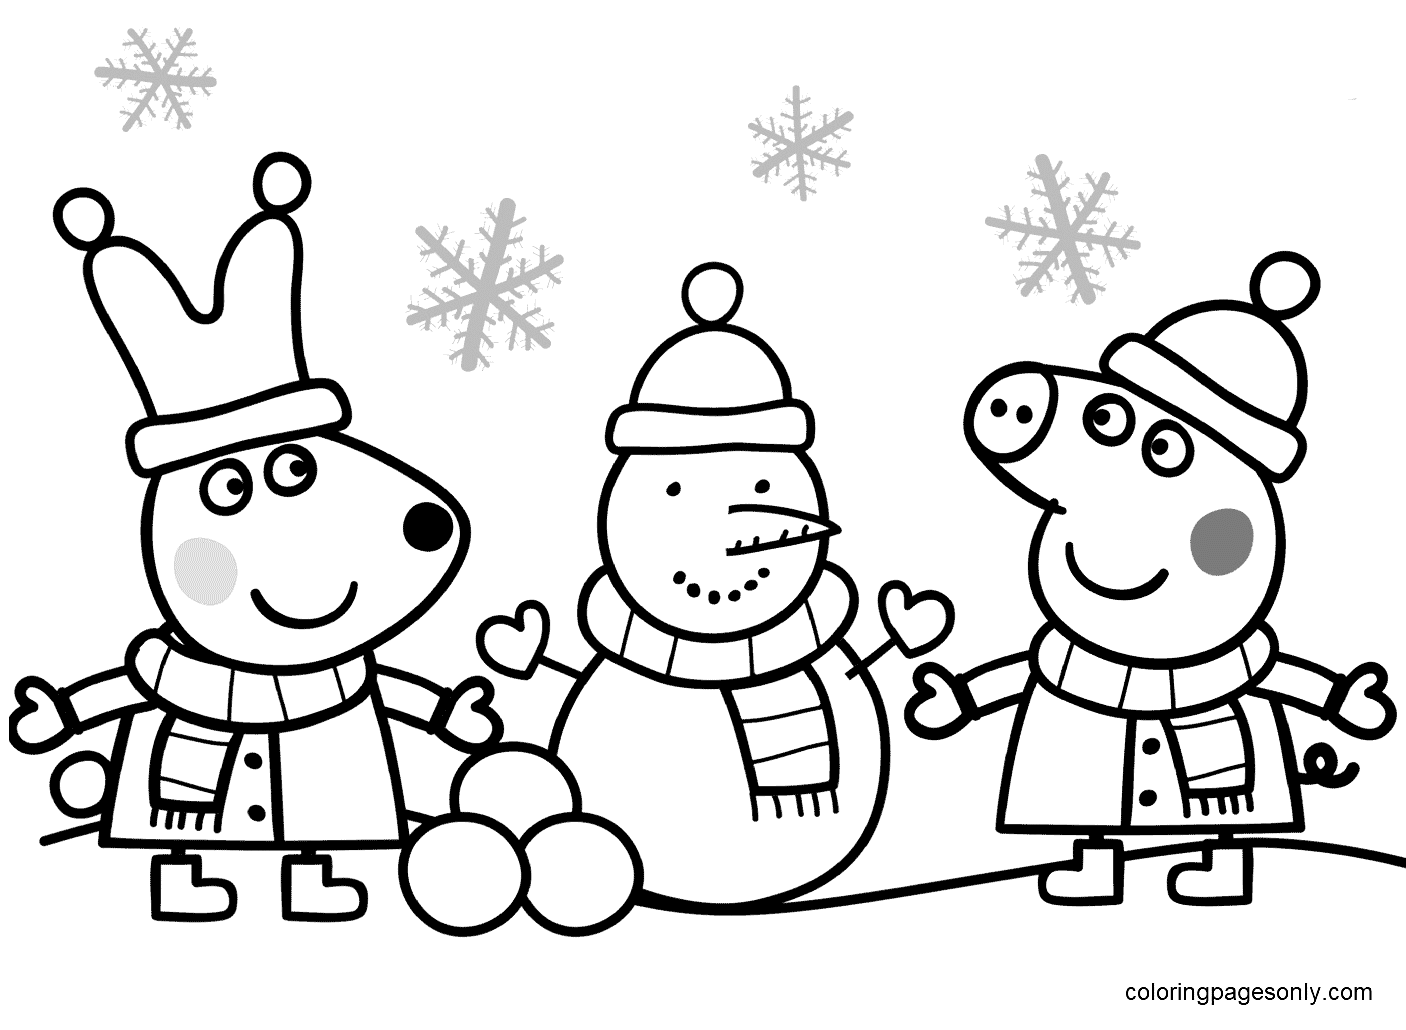 Peppa et Rebecca fabriquent un bonhomme de neige à partir de Peppa Pig